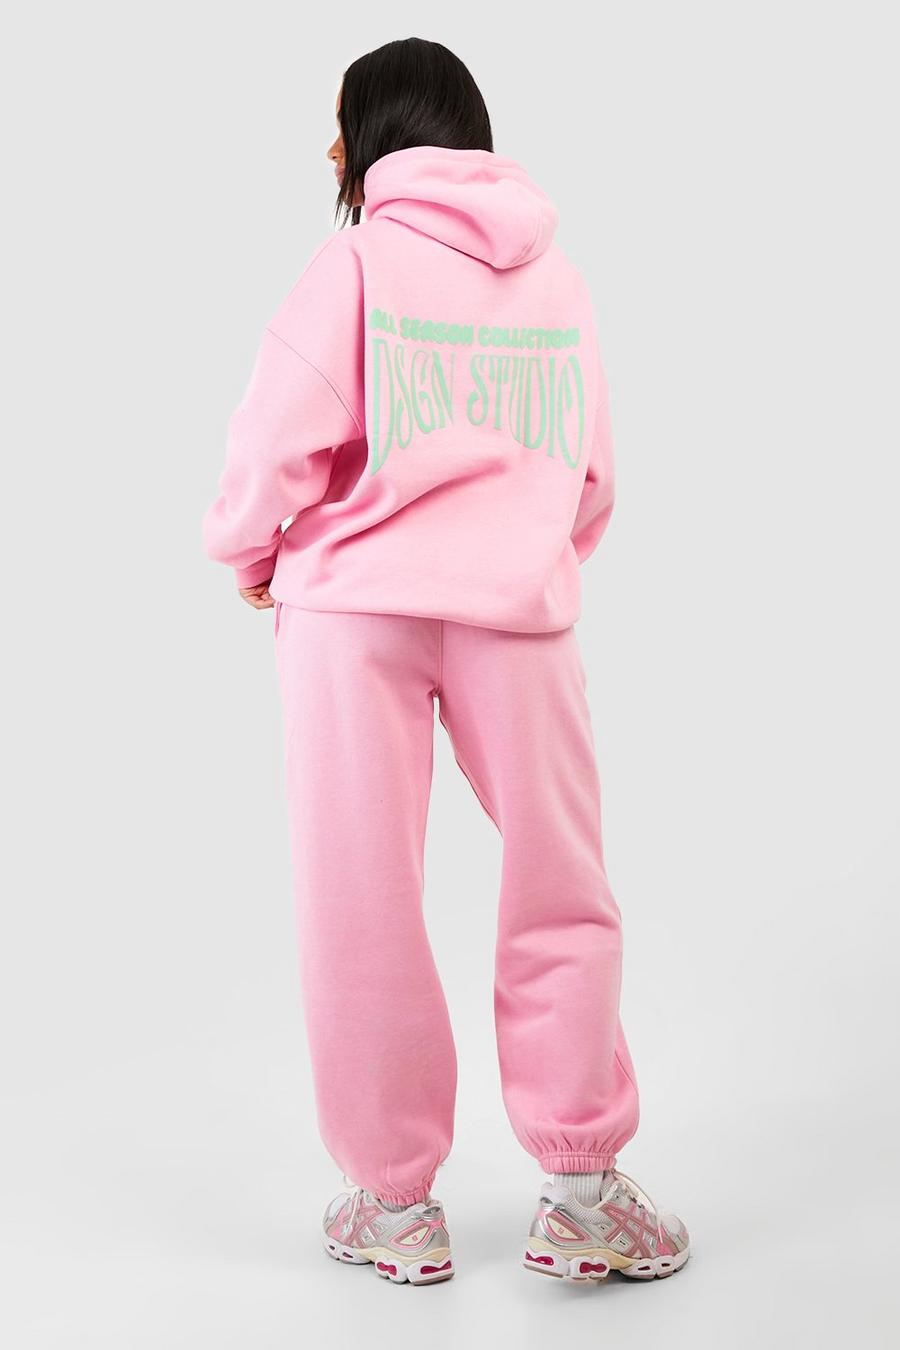 Chándal Dsgn Studio con capucha y eslogan en relieve, Pink